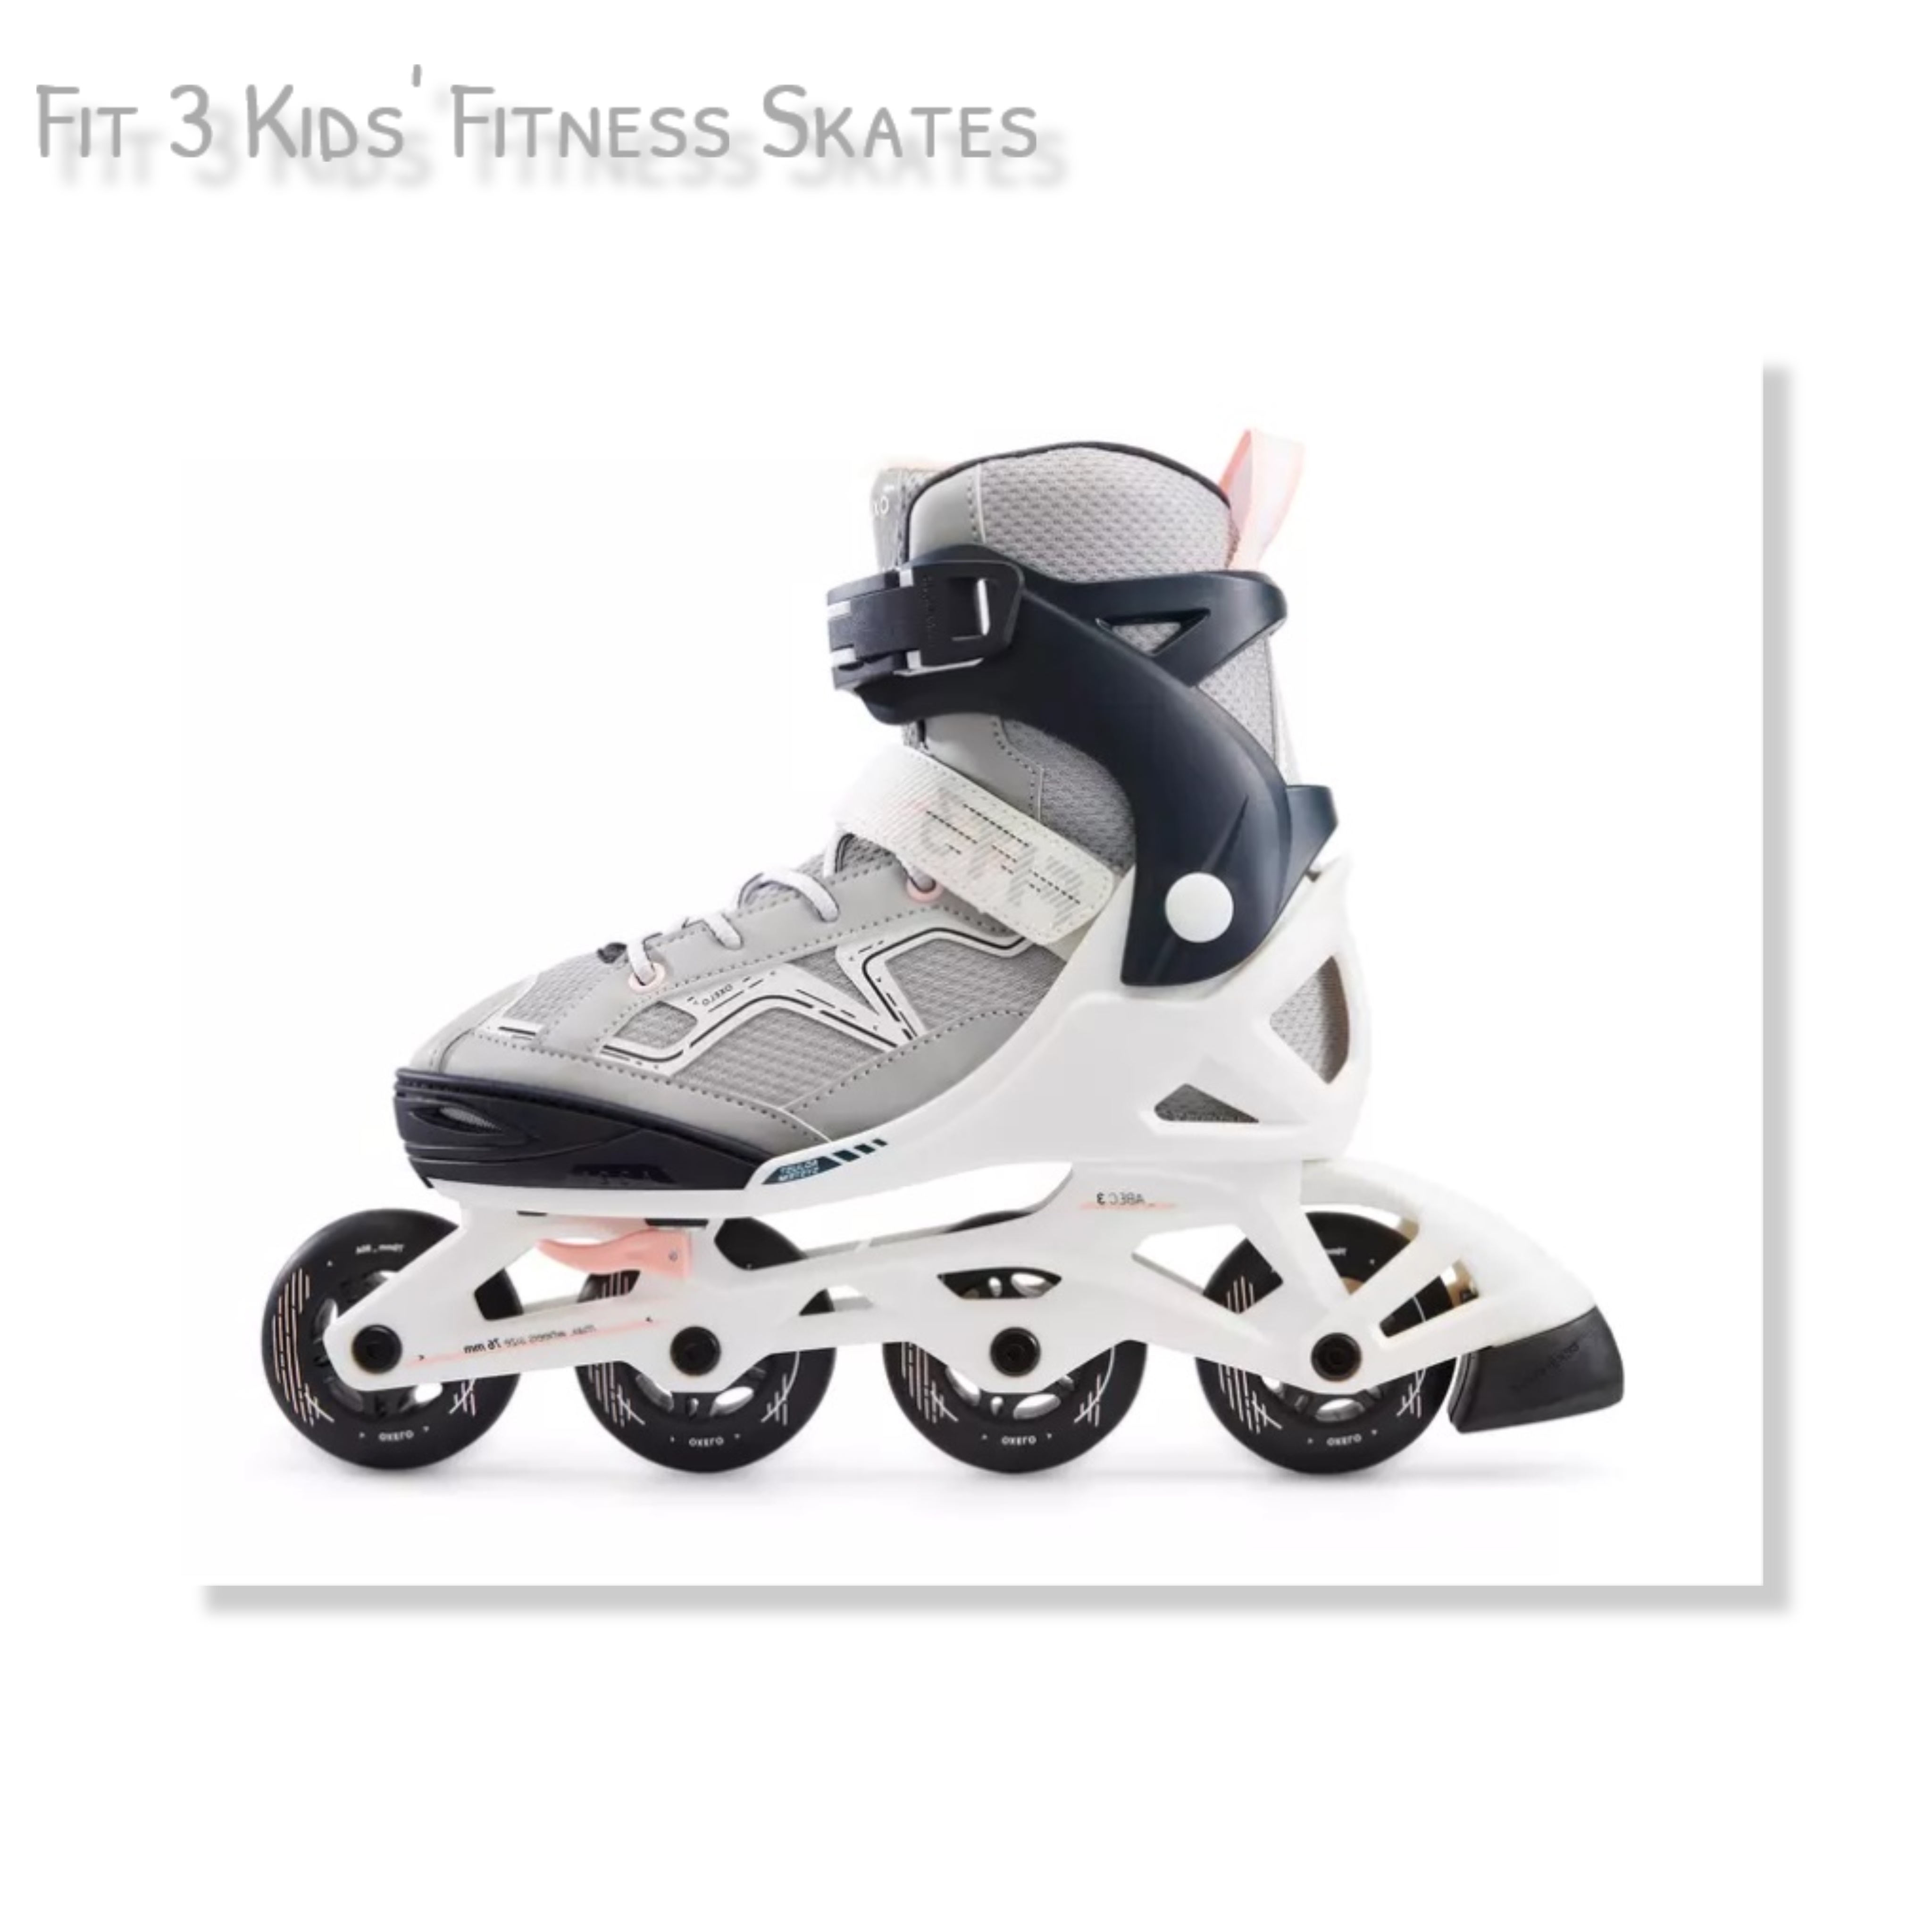 รองเท้าสเก็ต เพื่อการออกกำลังกาย สำหรับเด็ก Kids' Fitness Skates Fit 3